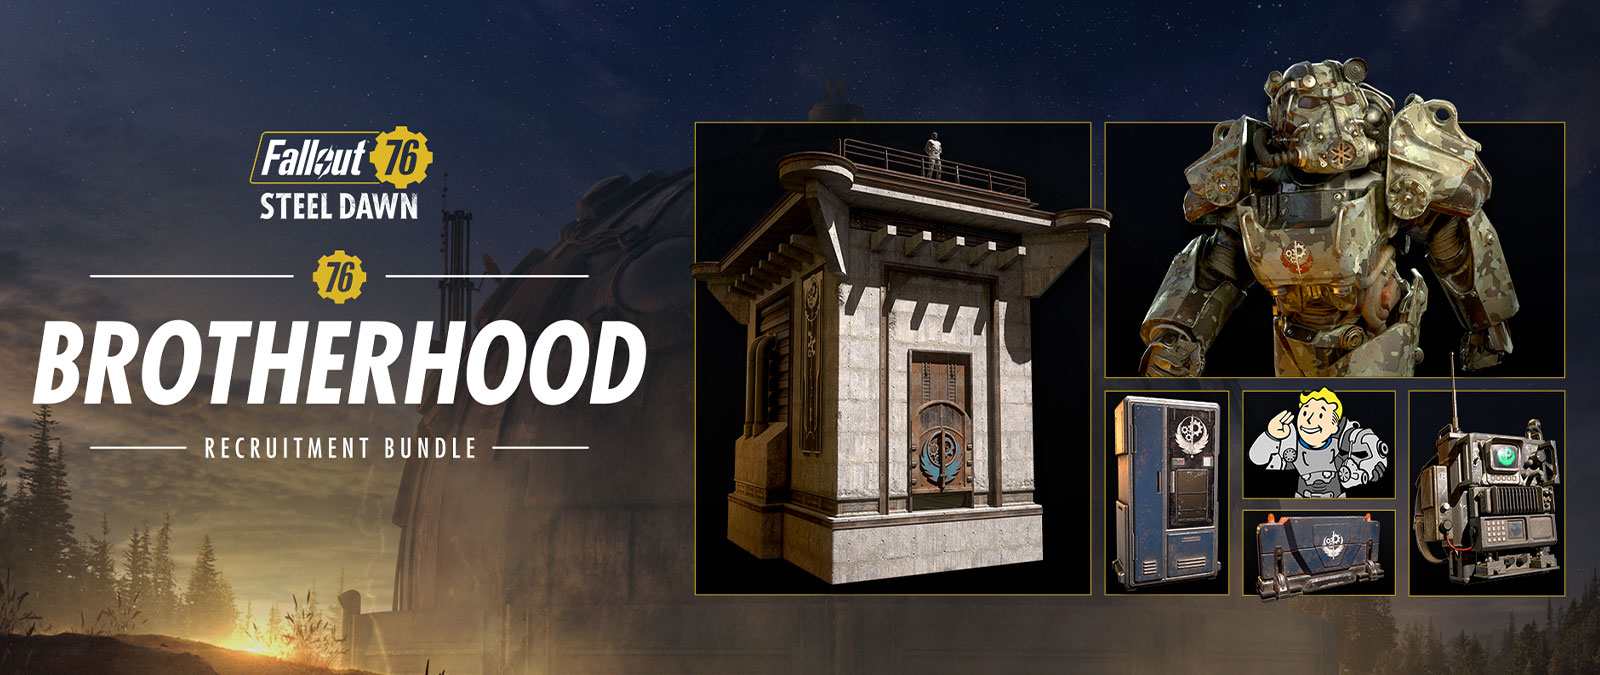 Πακέτο Fallout 76 Steel Dawn Brotherhood Recruitment Bundle, Power Armor, πύργος ανίχνευσης και άλλα αντικείμενα